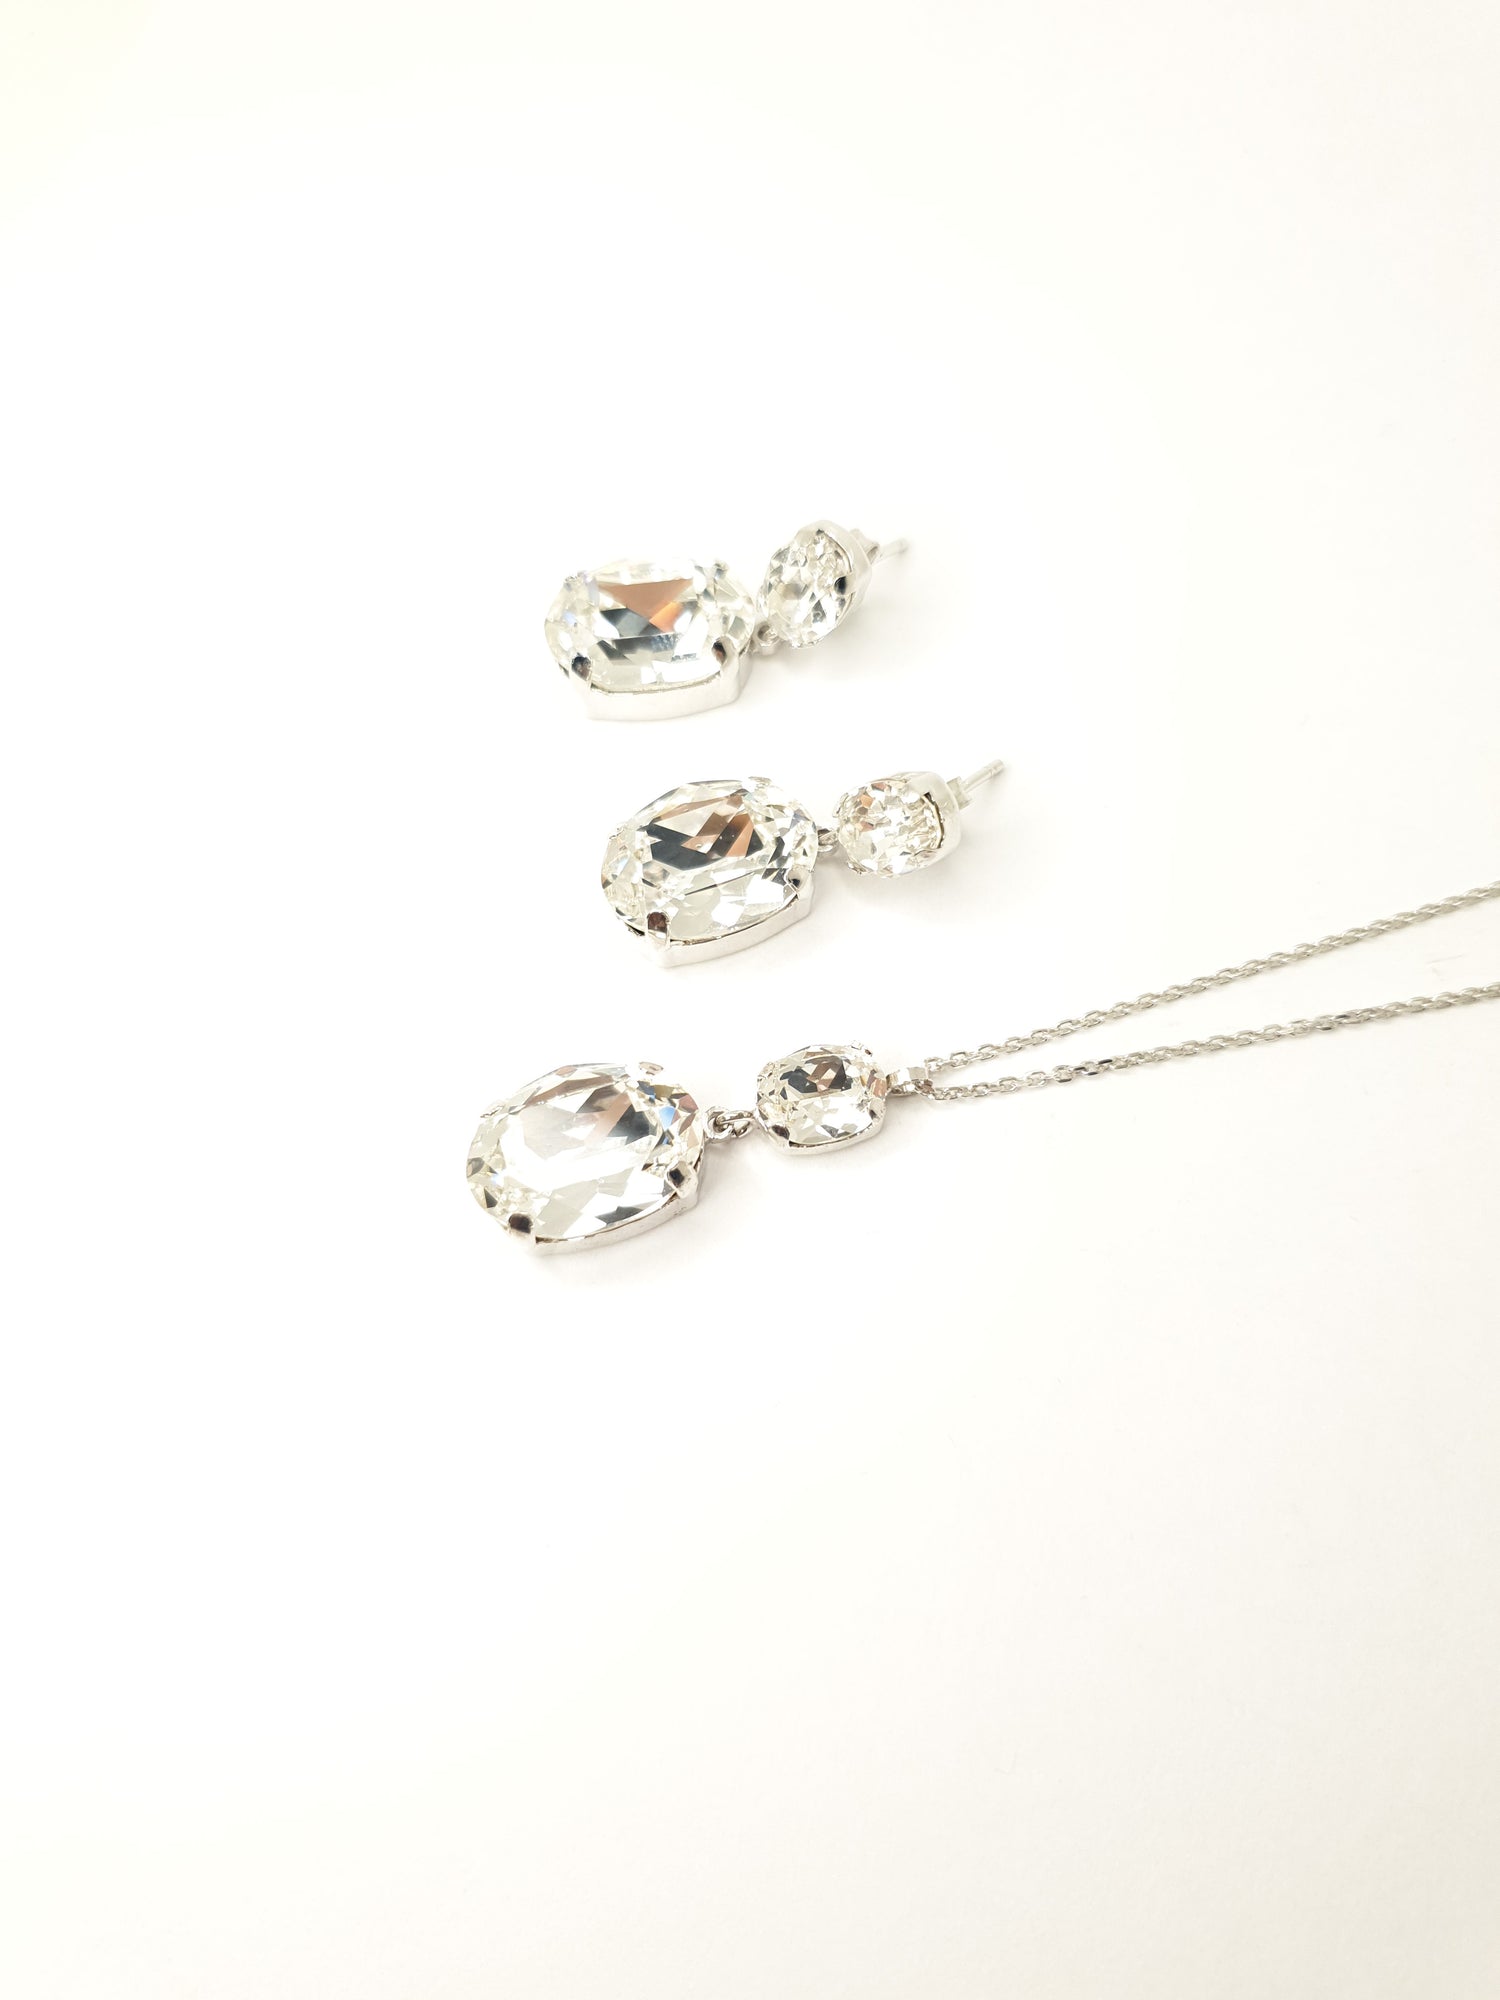 Silberkette mit Swarovski Kristallen großer Stein Damenschmuck Goldkette Collier Schmuck Yuwelamour Chain 